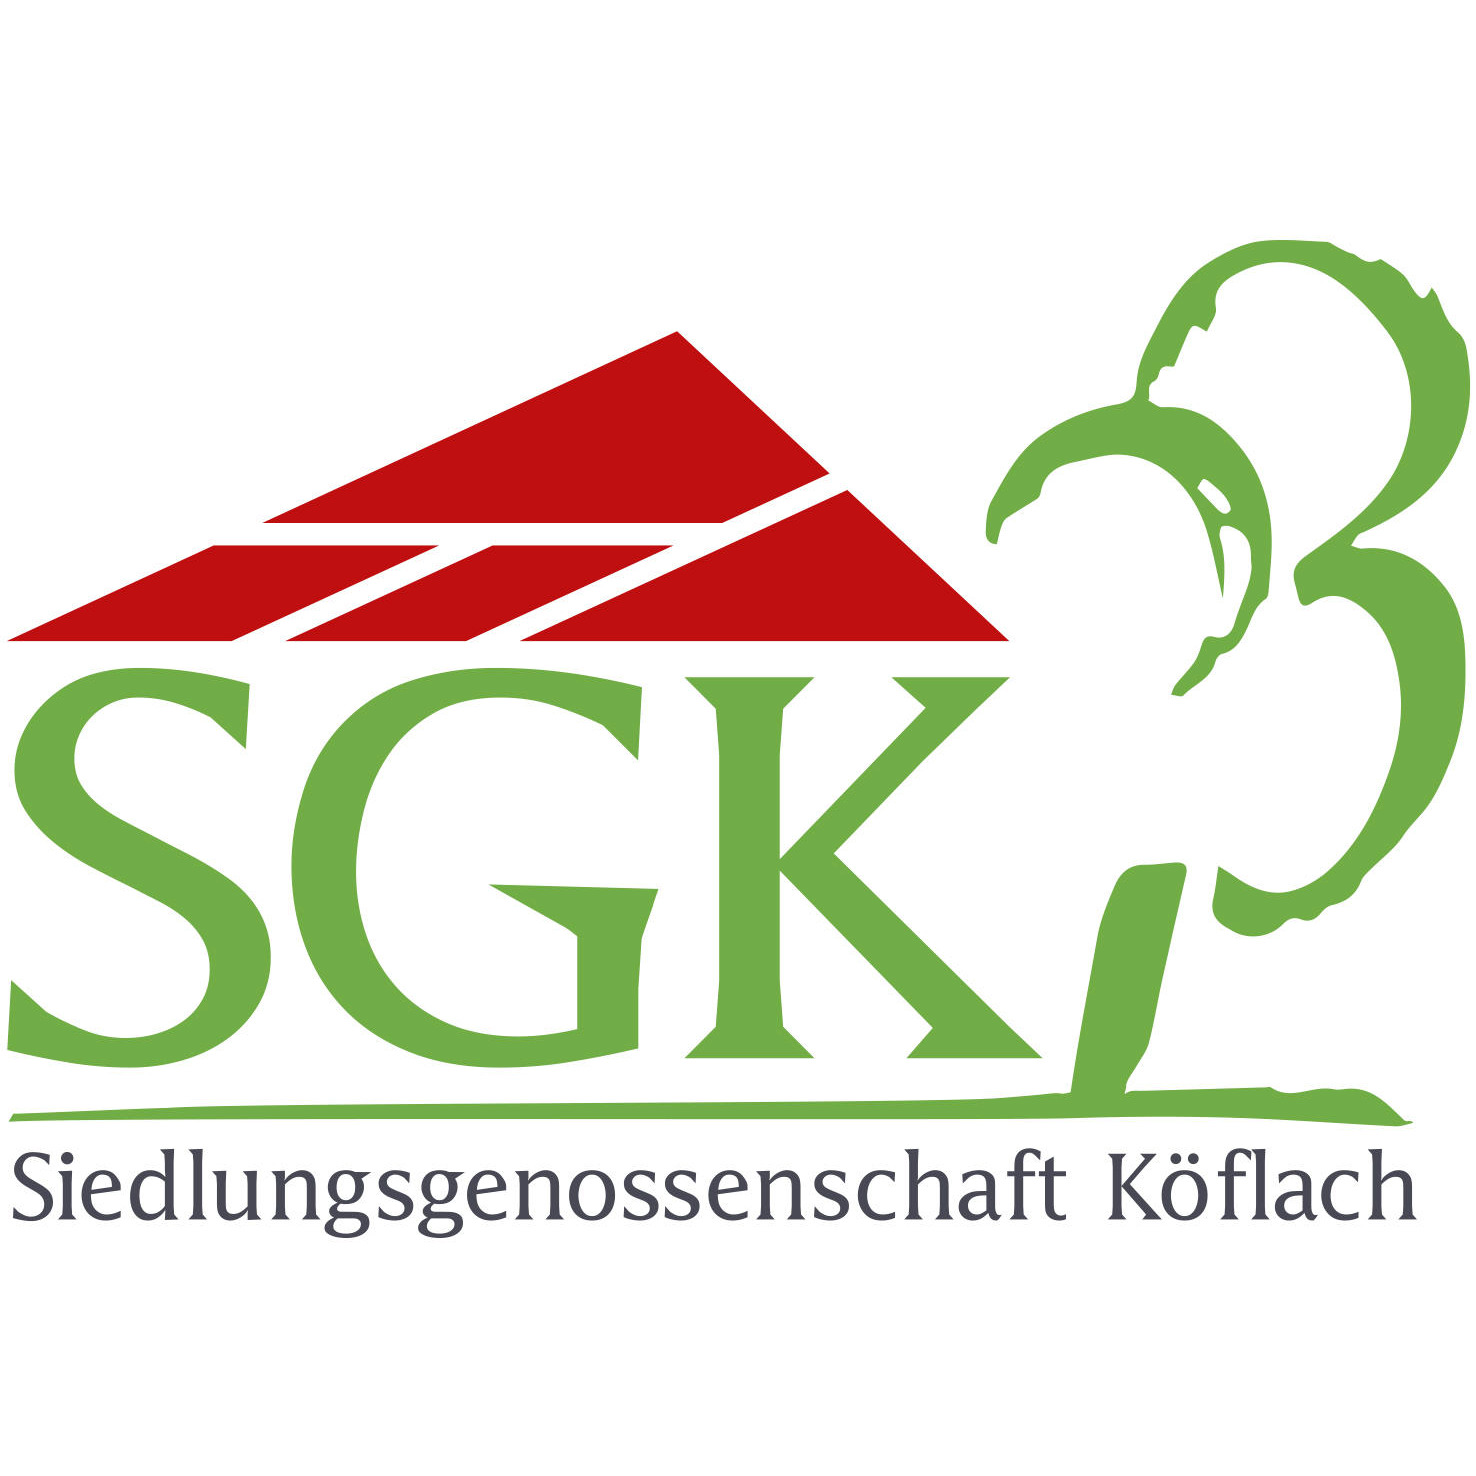 SGK Siedlungsgenossenschaft Köflach Logo